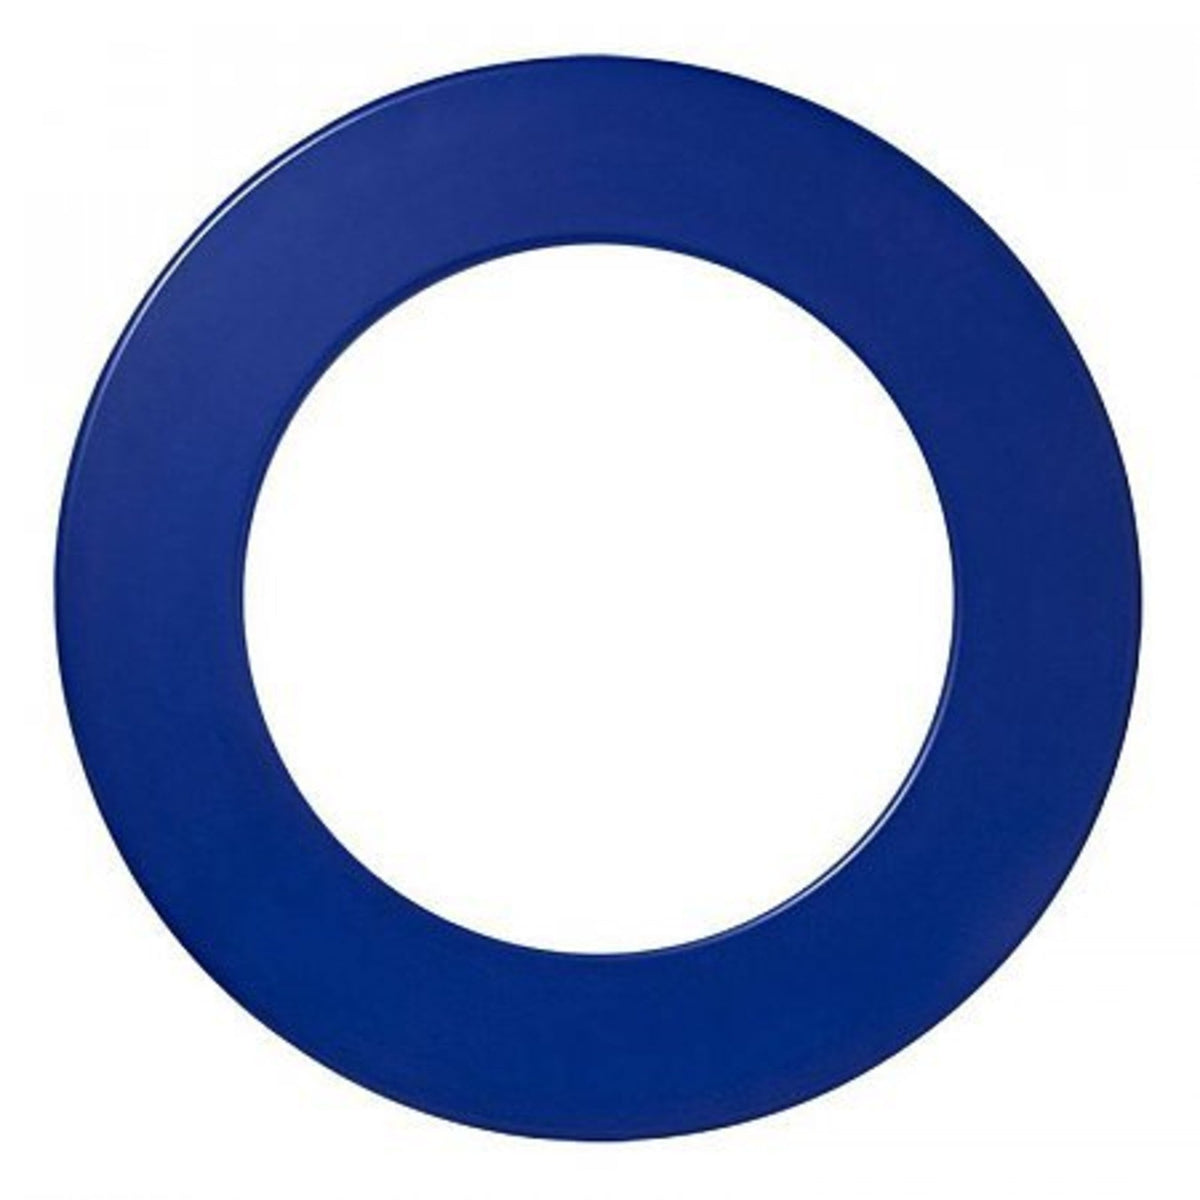 1 tlg. ONE80 - Surround weiß schwarz blau rot Dartscheibe